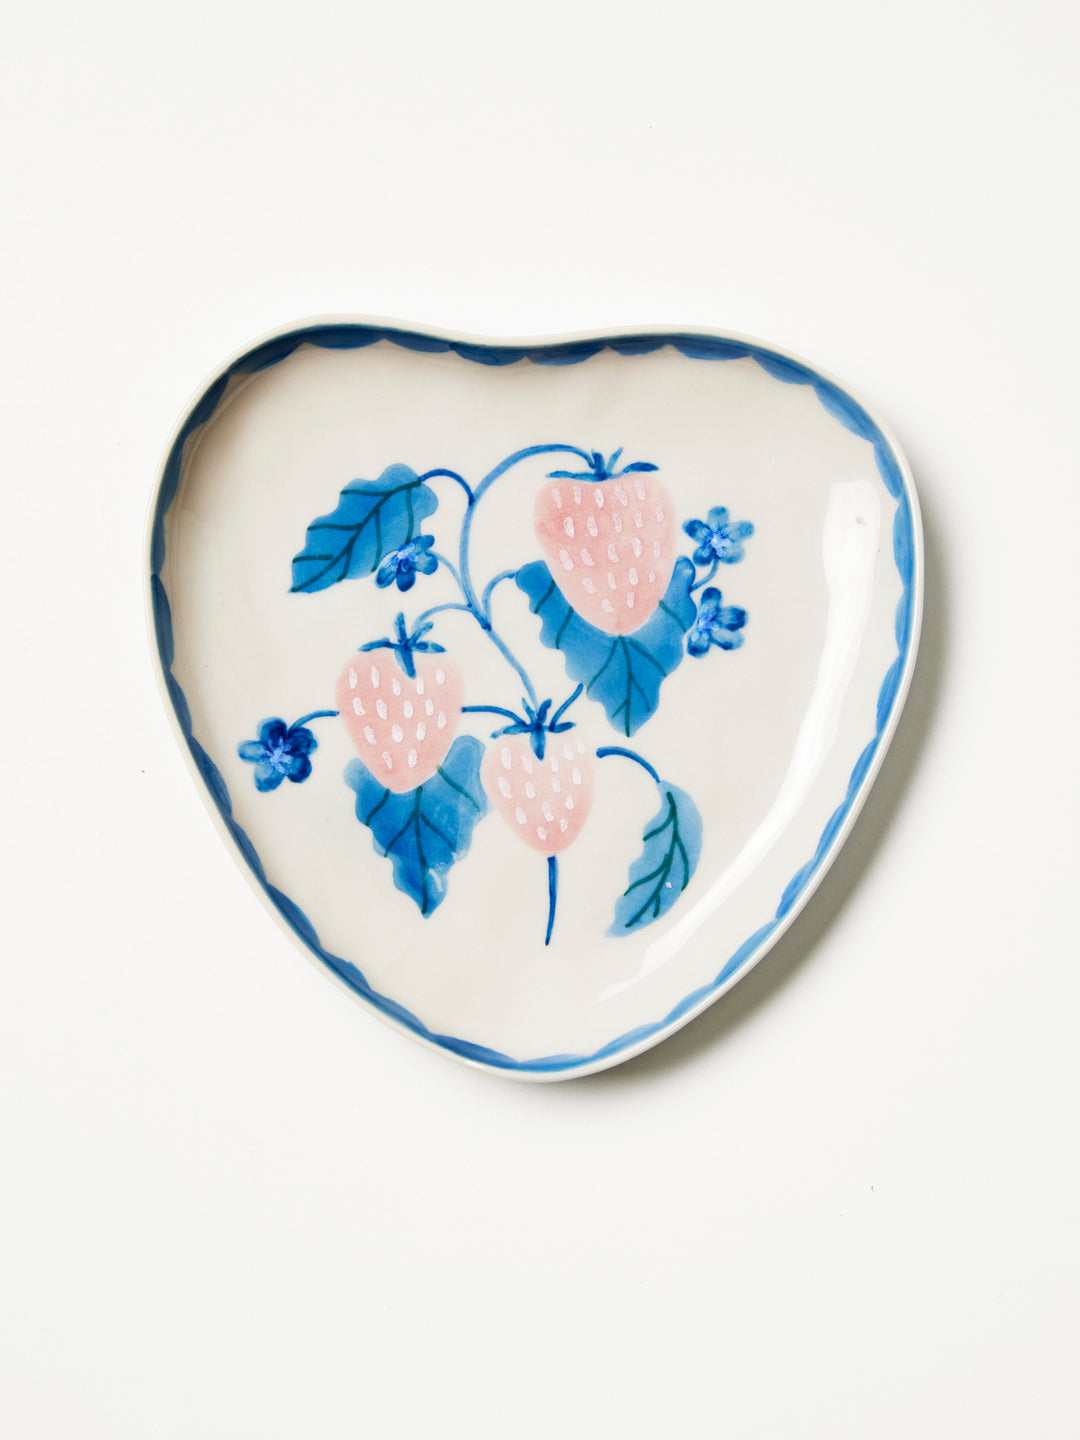 JONES & CO | STRAWBERRY HEART TRAY BLUE